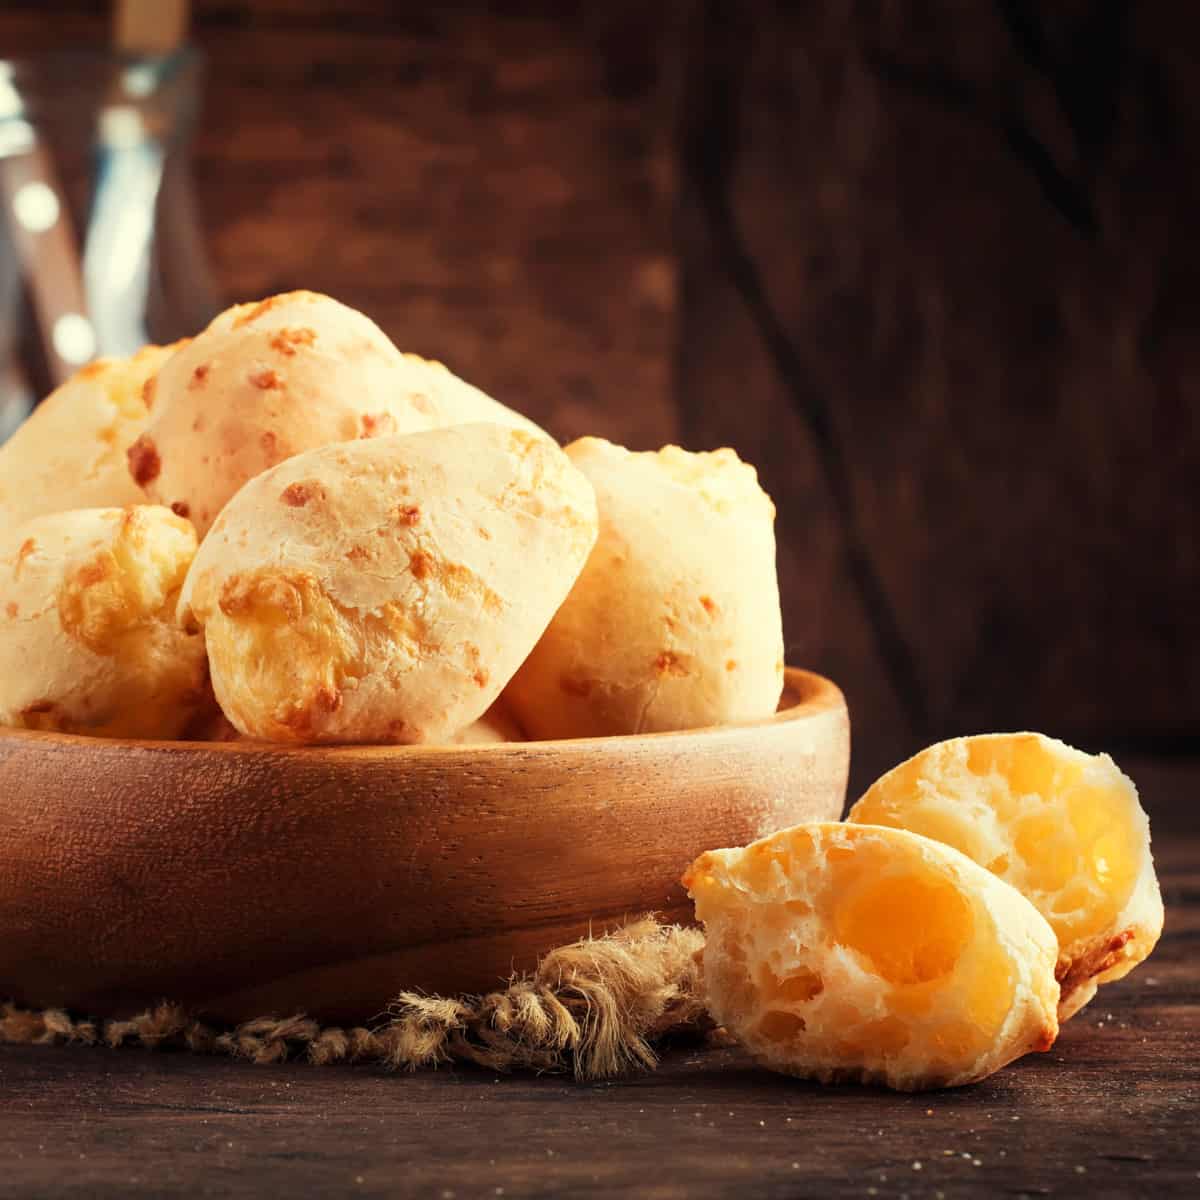 Brazilian Cheese Bread 